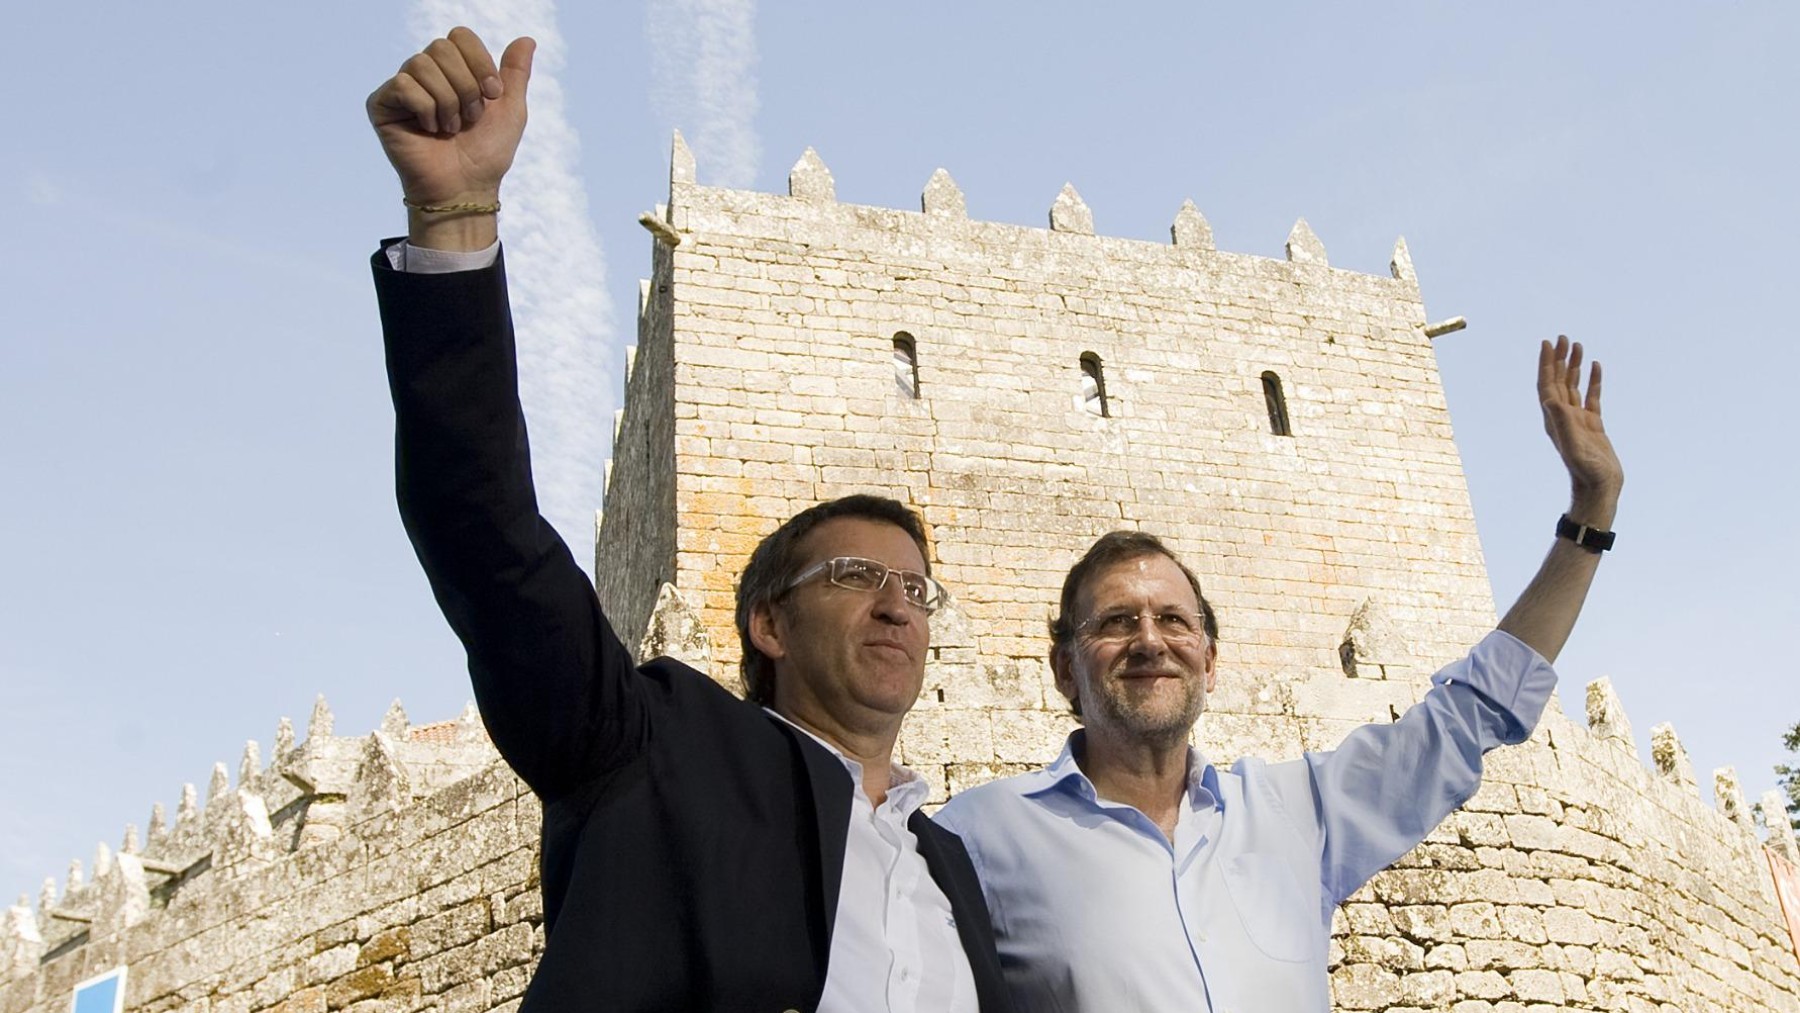 Feijóo y Rajoy en Sotomayor en una imagen de archivo.